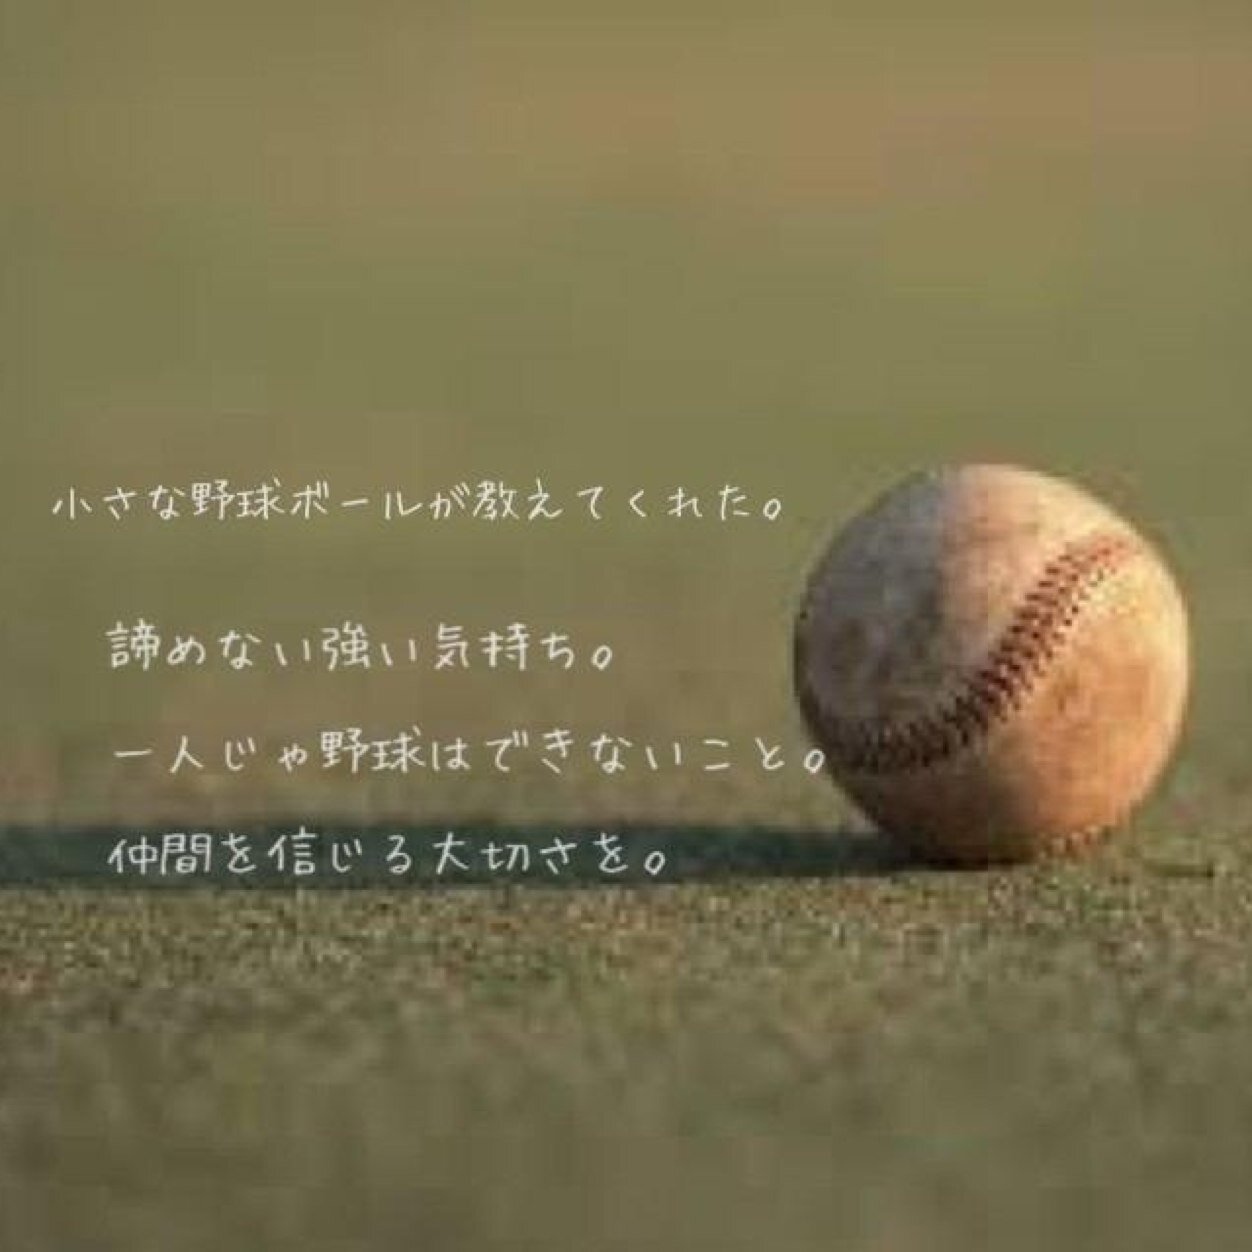 少人数野球部あるある Twitter પર 帽子に書く言葉募集しています 何かいい言葉があれば教えてください 少人数野球部あるある